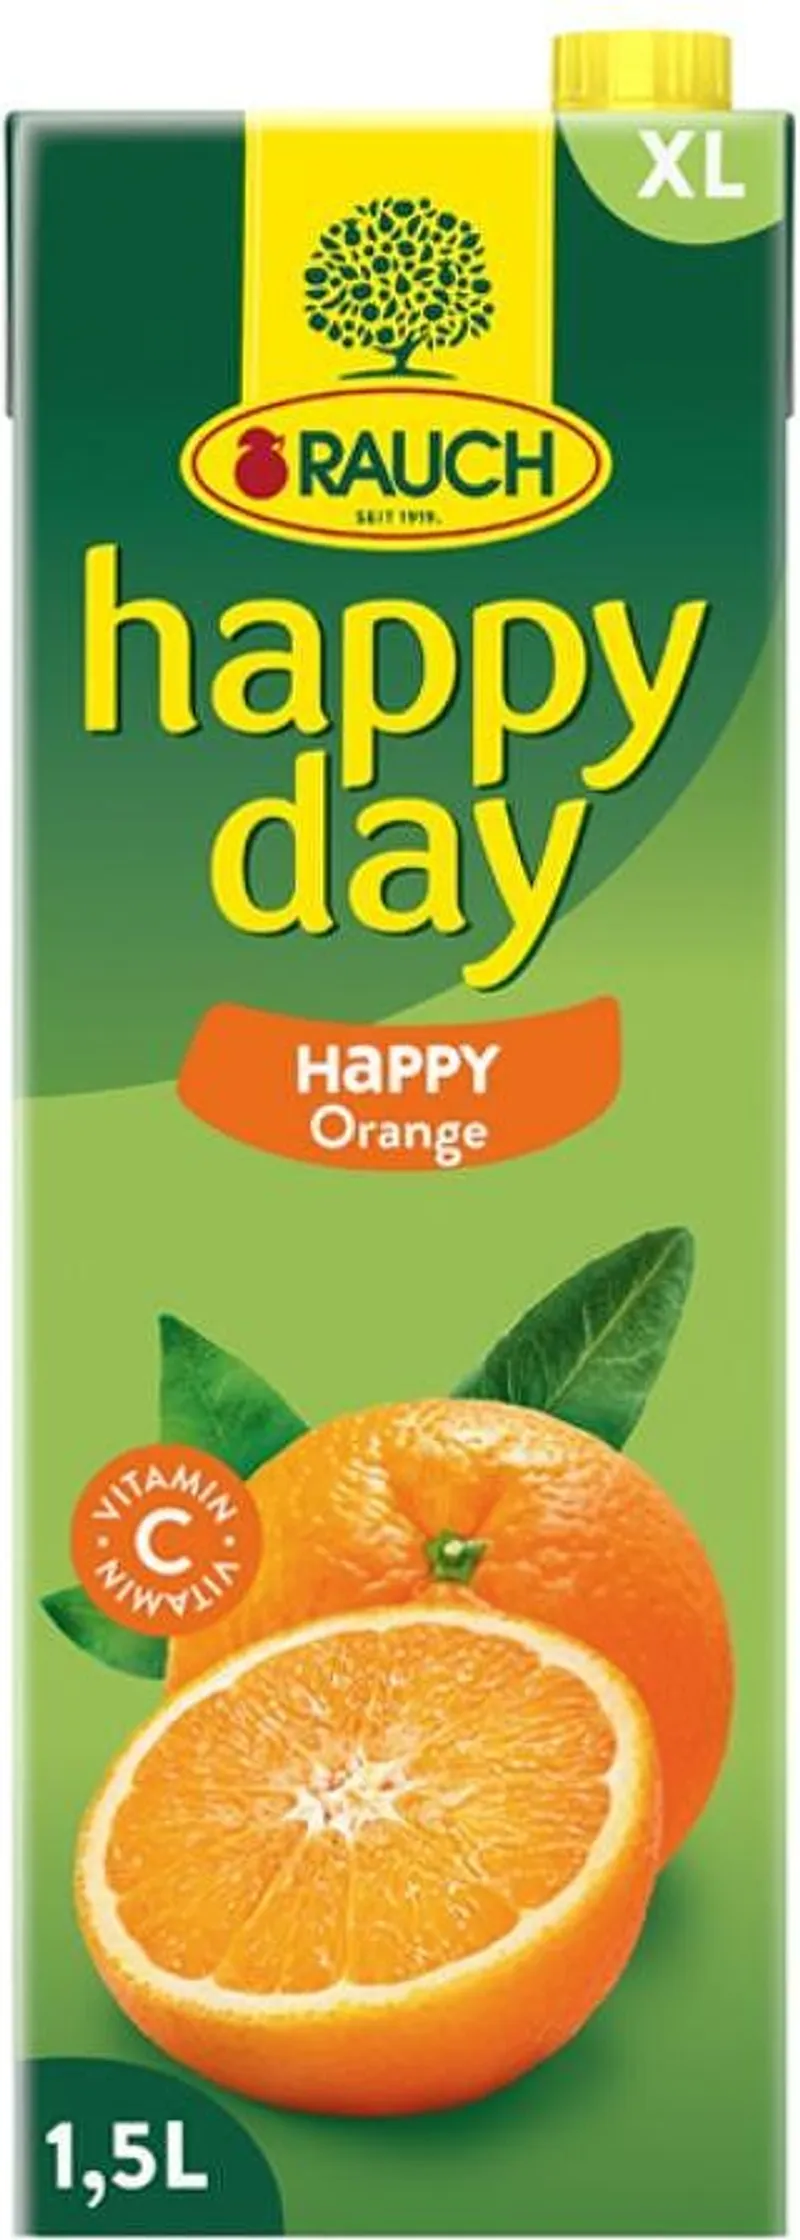 Сок HAPPY DAY family портокал 1.5 л.